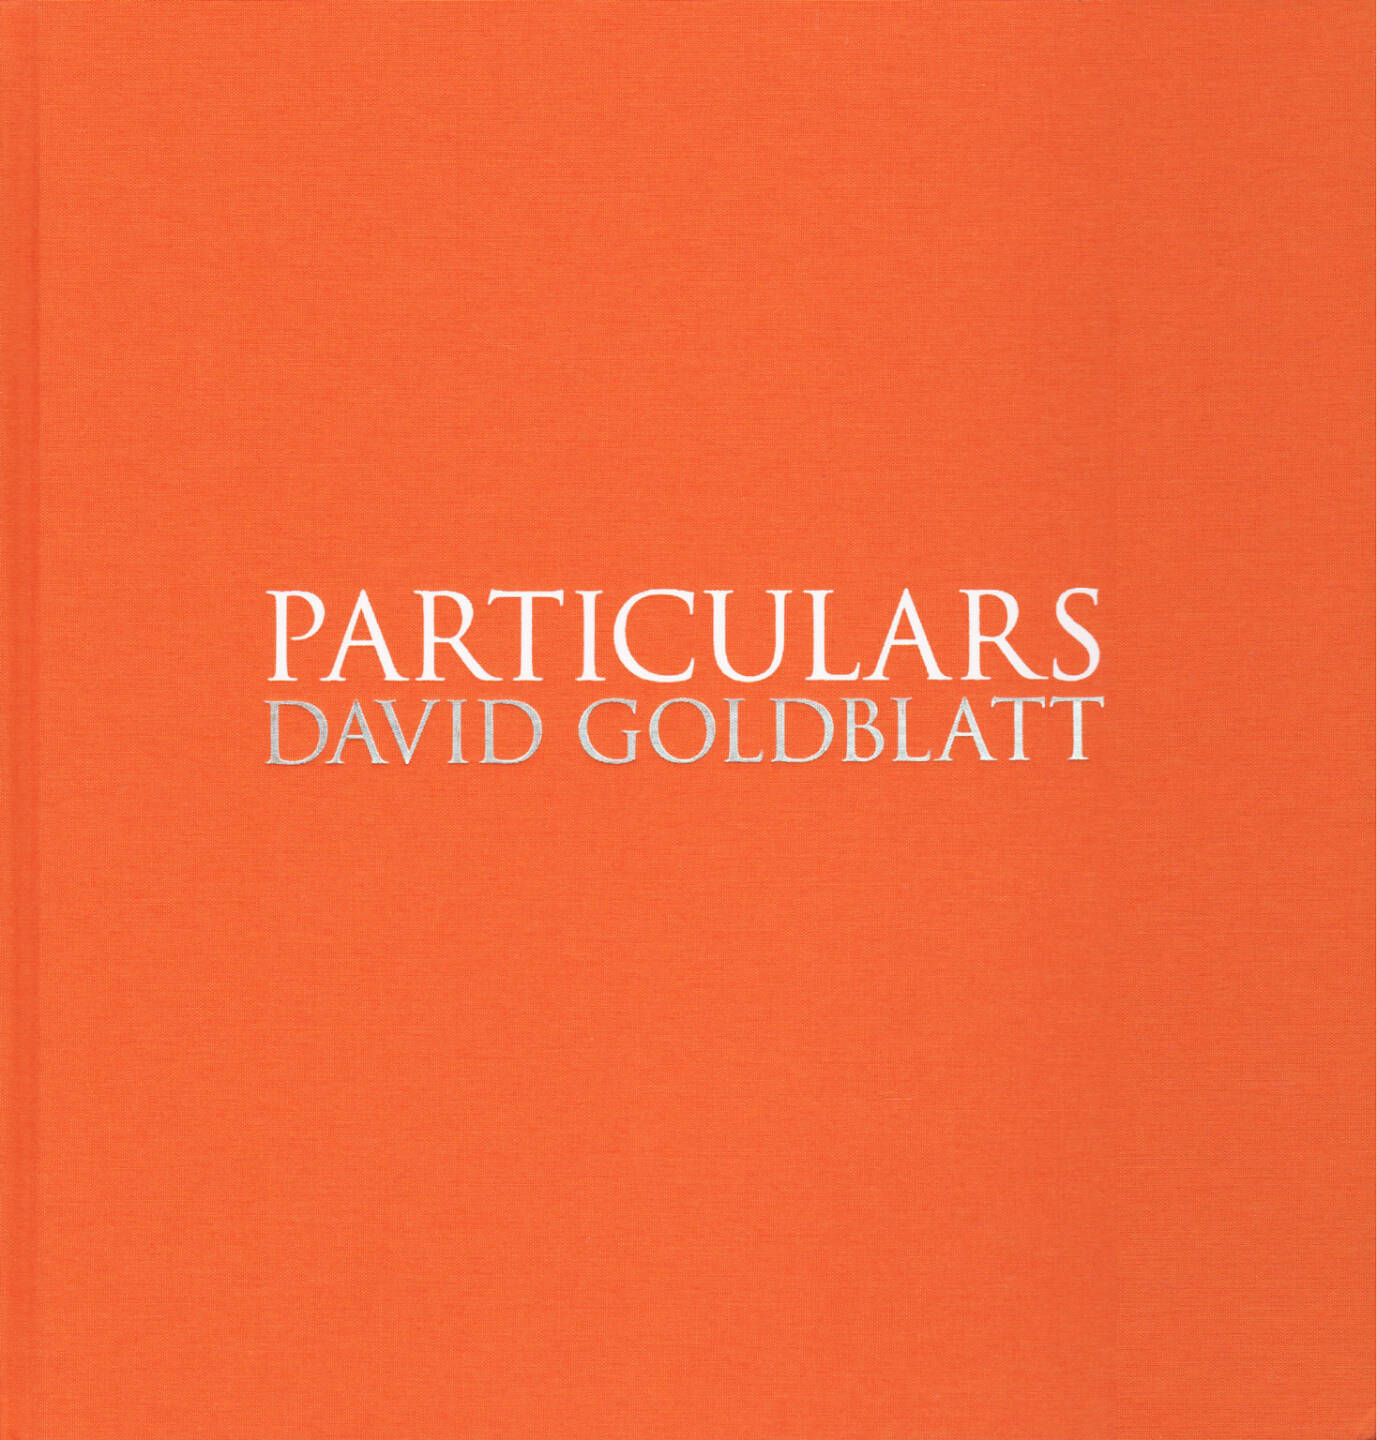 David Goldblatt - Particulars, Steidl 2014, Cover - http://josefchladek.com/book/david_goldblatt_-_particulars